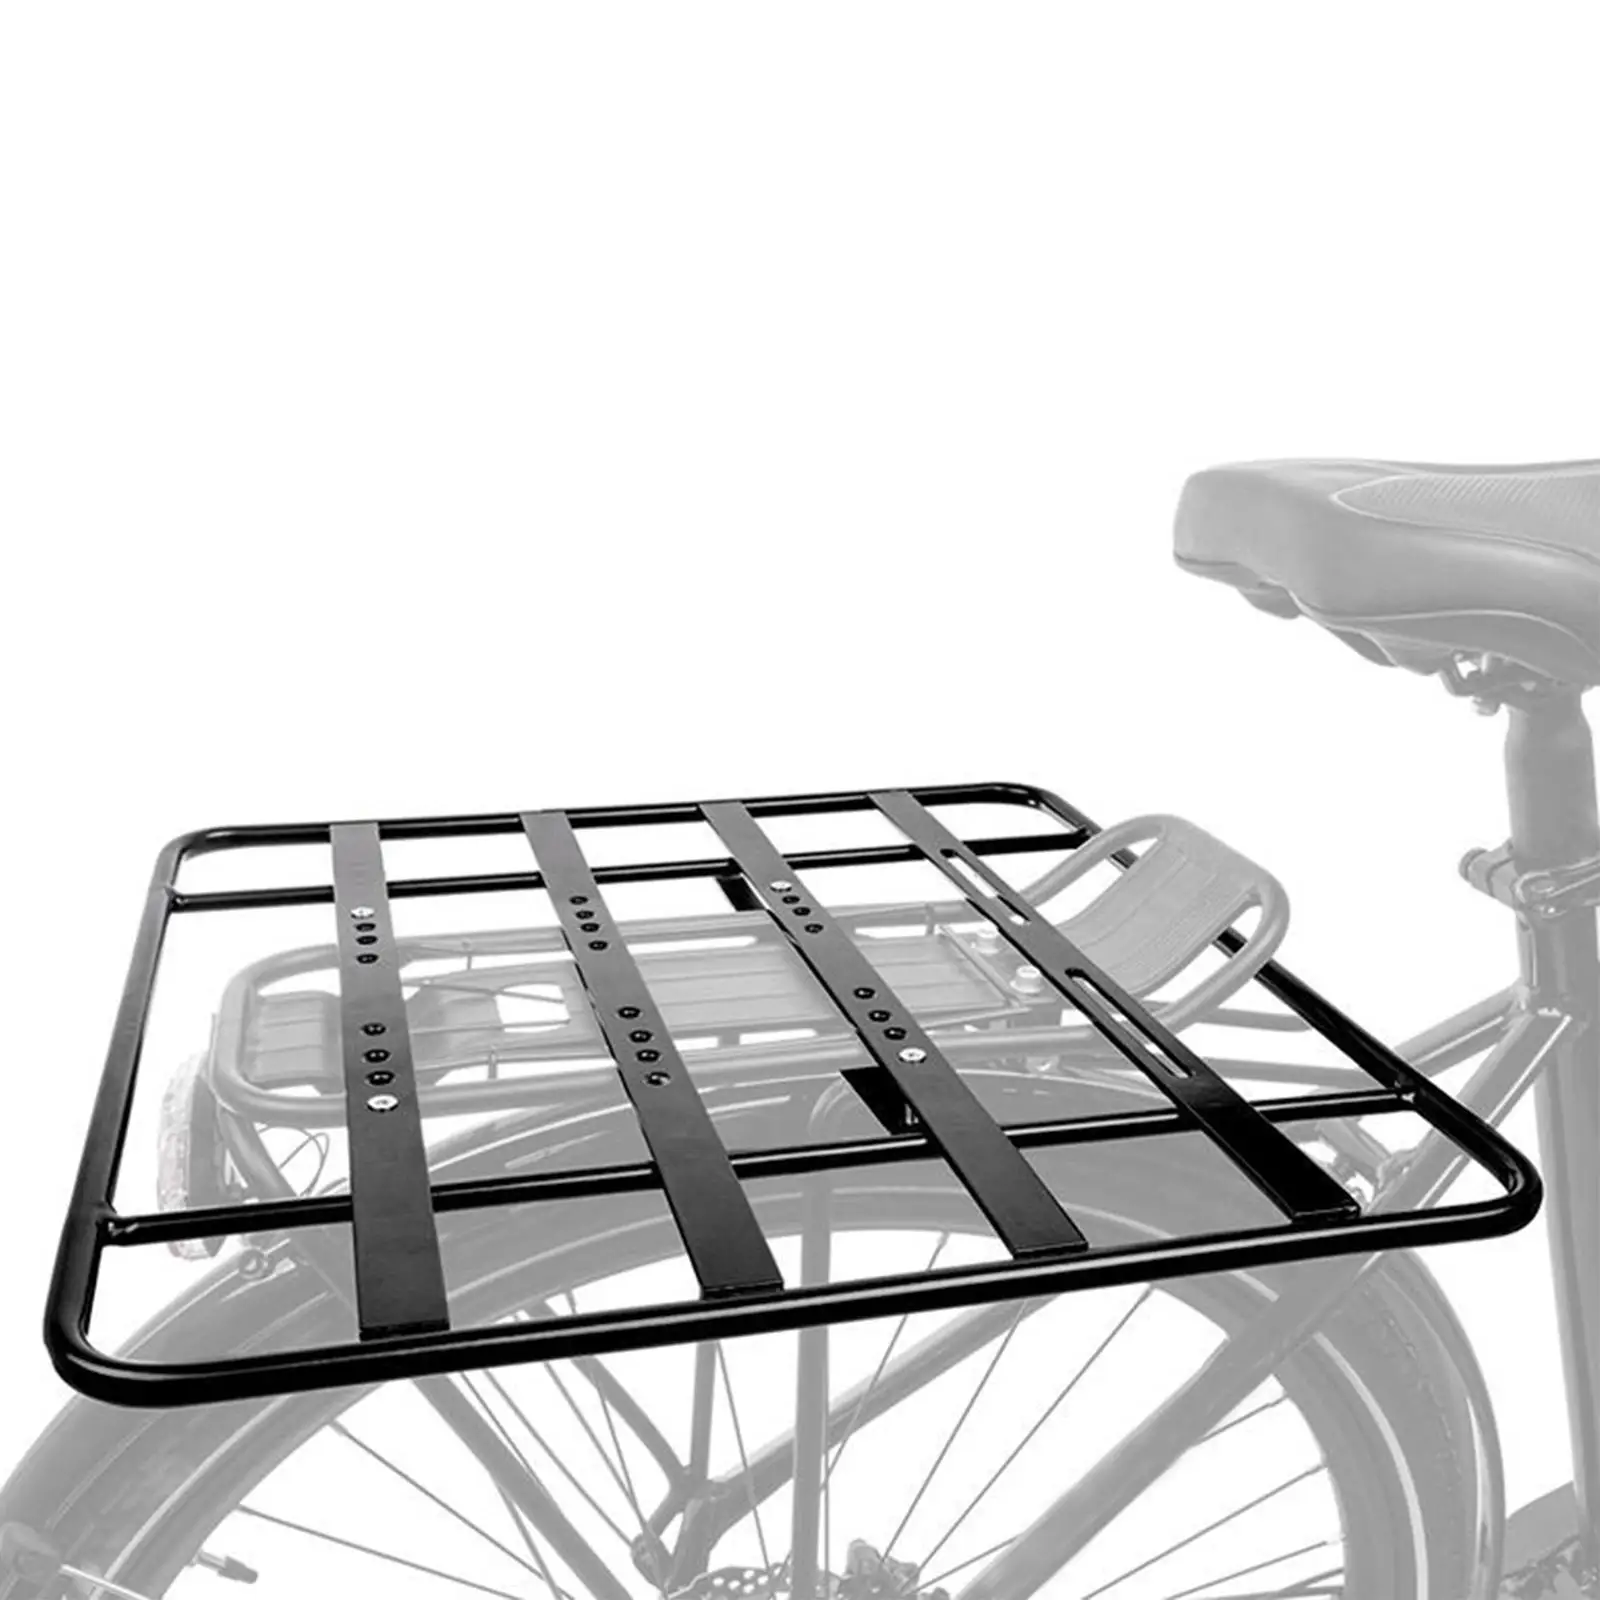 Bike Back Shelf Bikes Accessories Detachable Bike Luggage Racks Road Bike Carrier Mountain Bike Bike Back Racks Bike Rear Rack